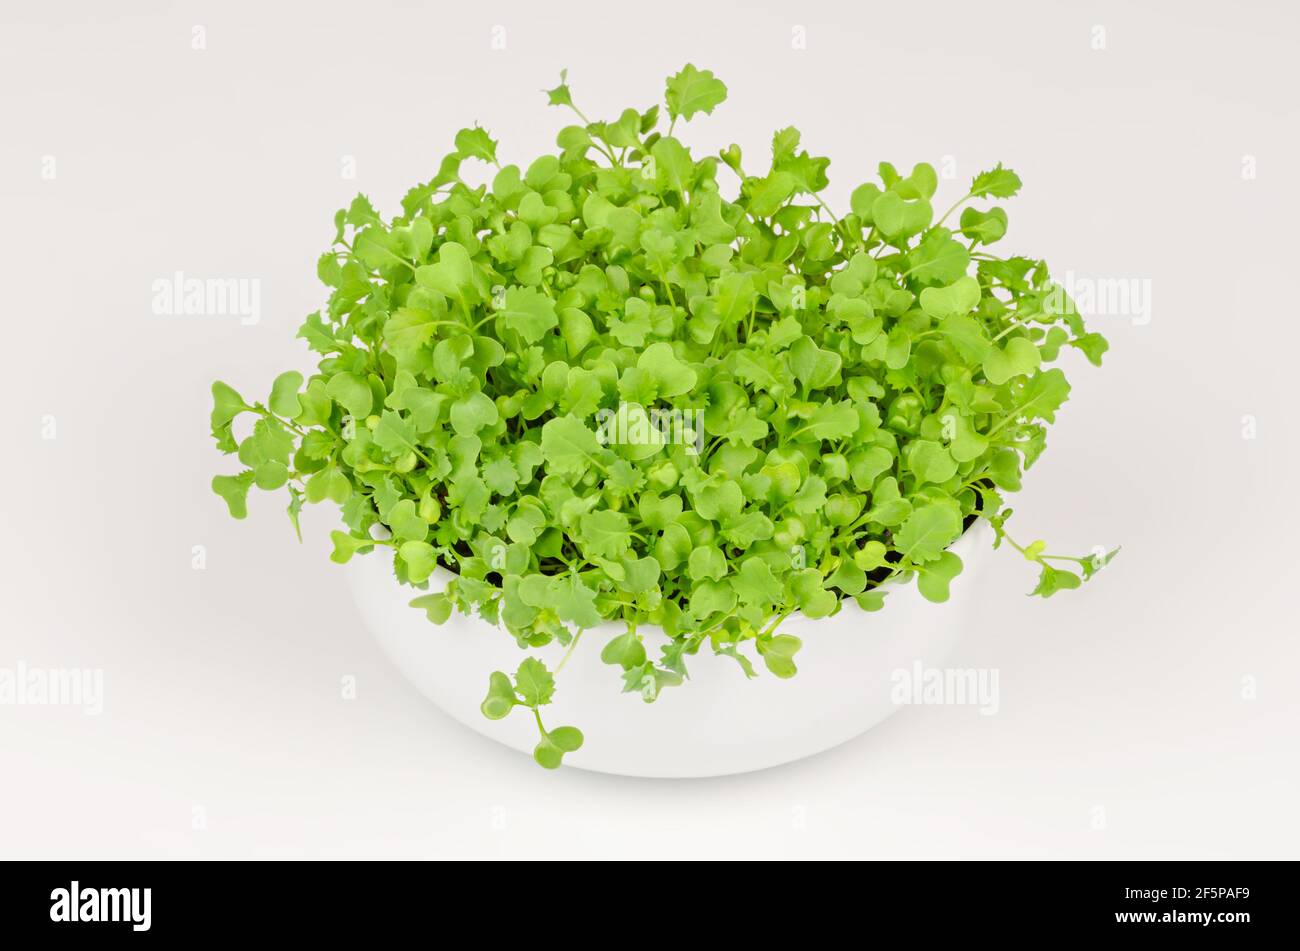 Kale los microgreens en un tazón blanco. Crecimiento de brotes verdes de col de hoja, plántulas y plantas jóvenes. Listo para comer, salpicado de col rizada. Foto de stock